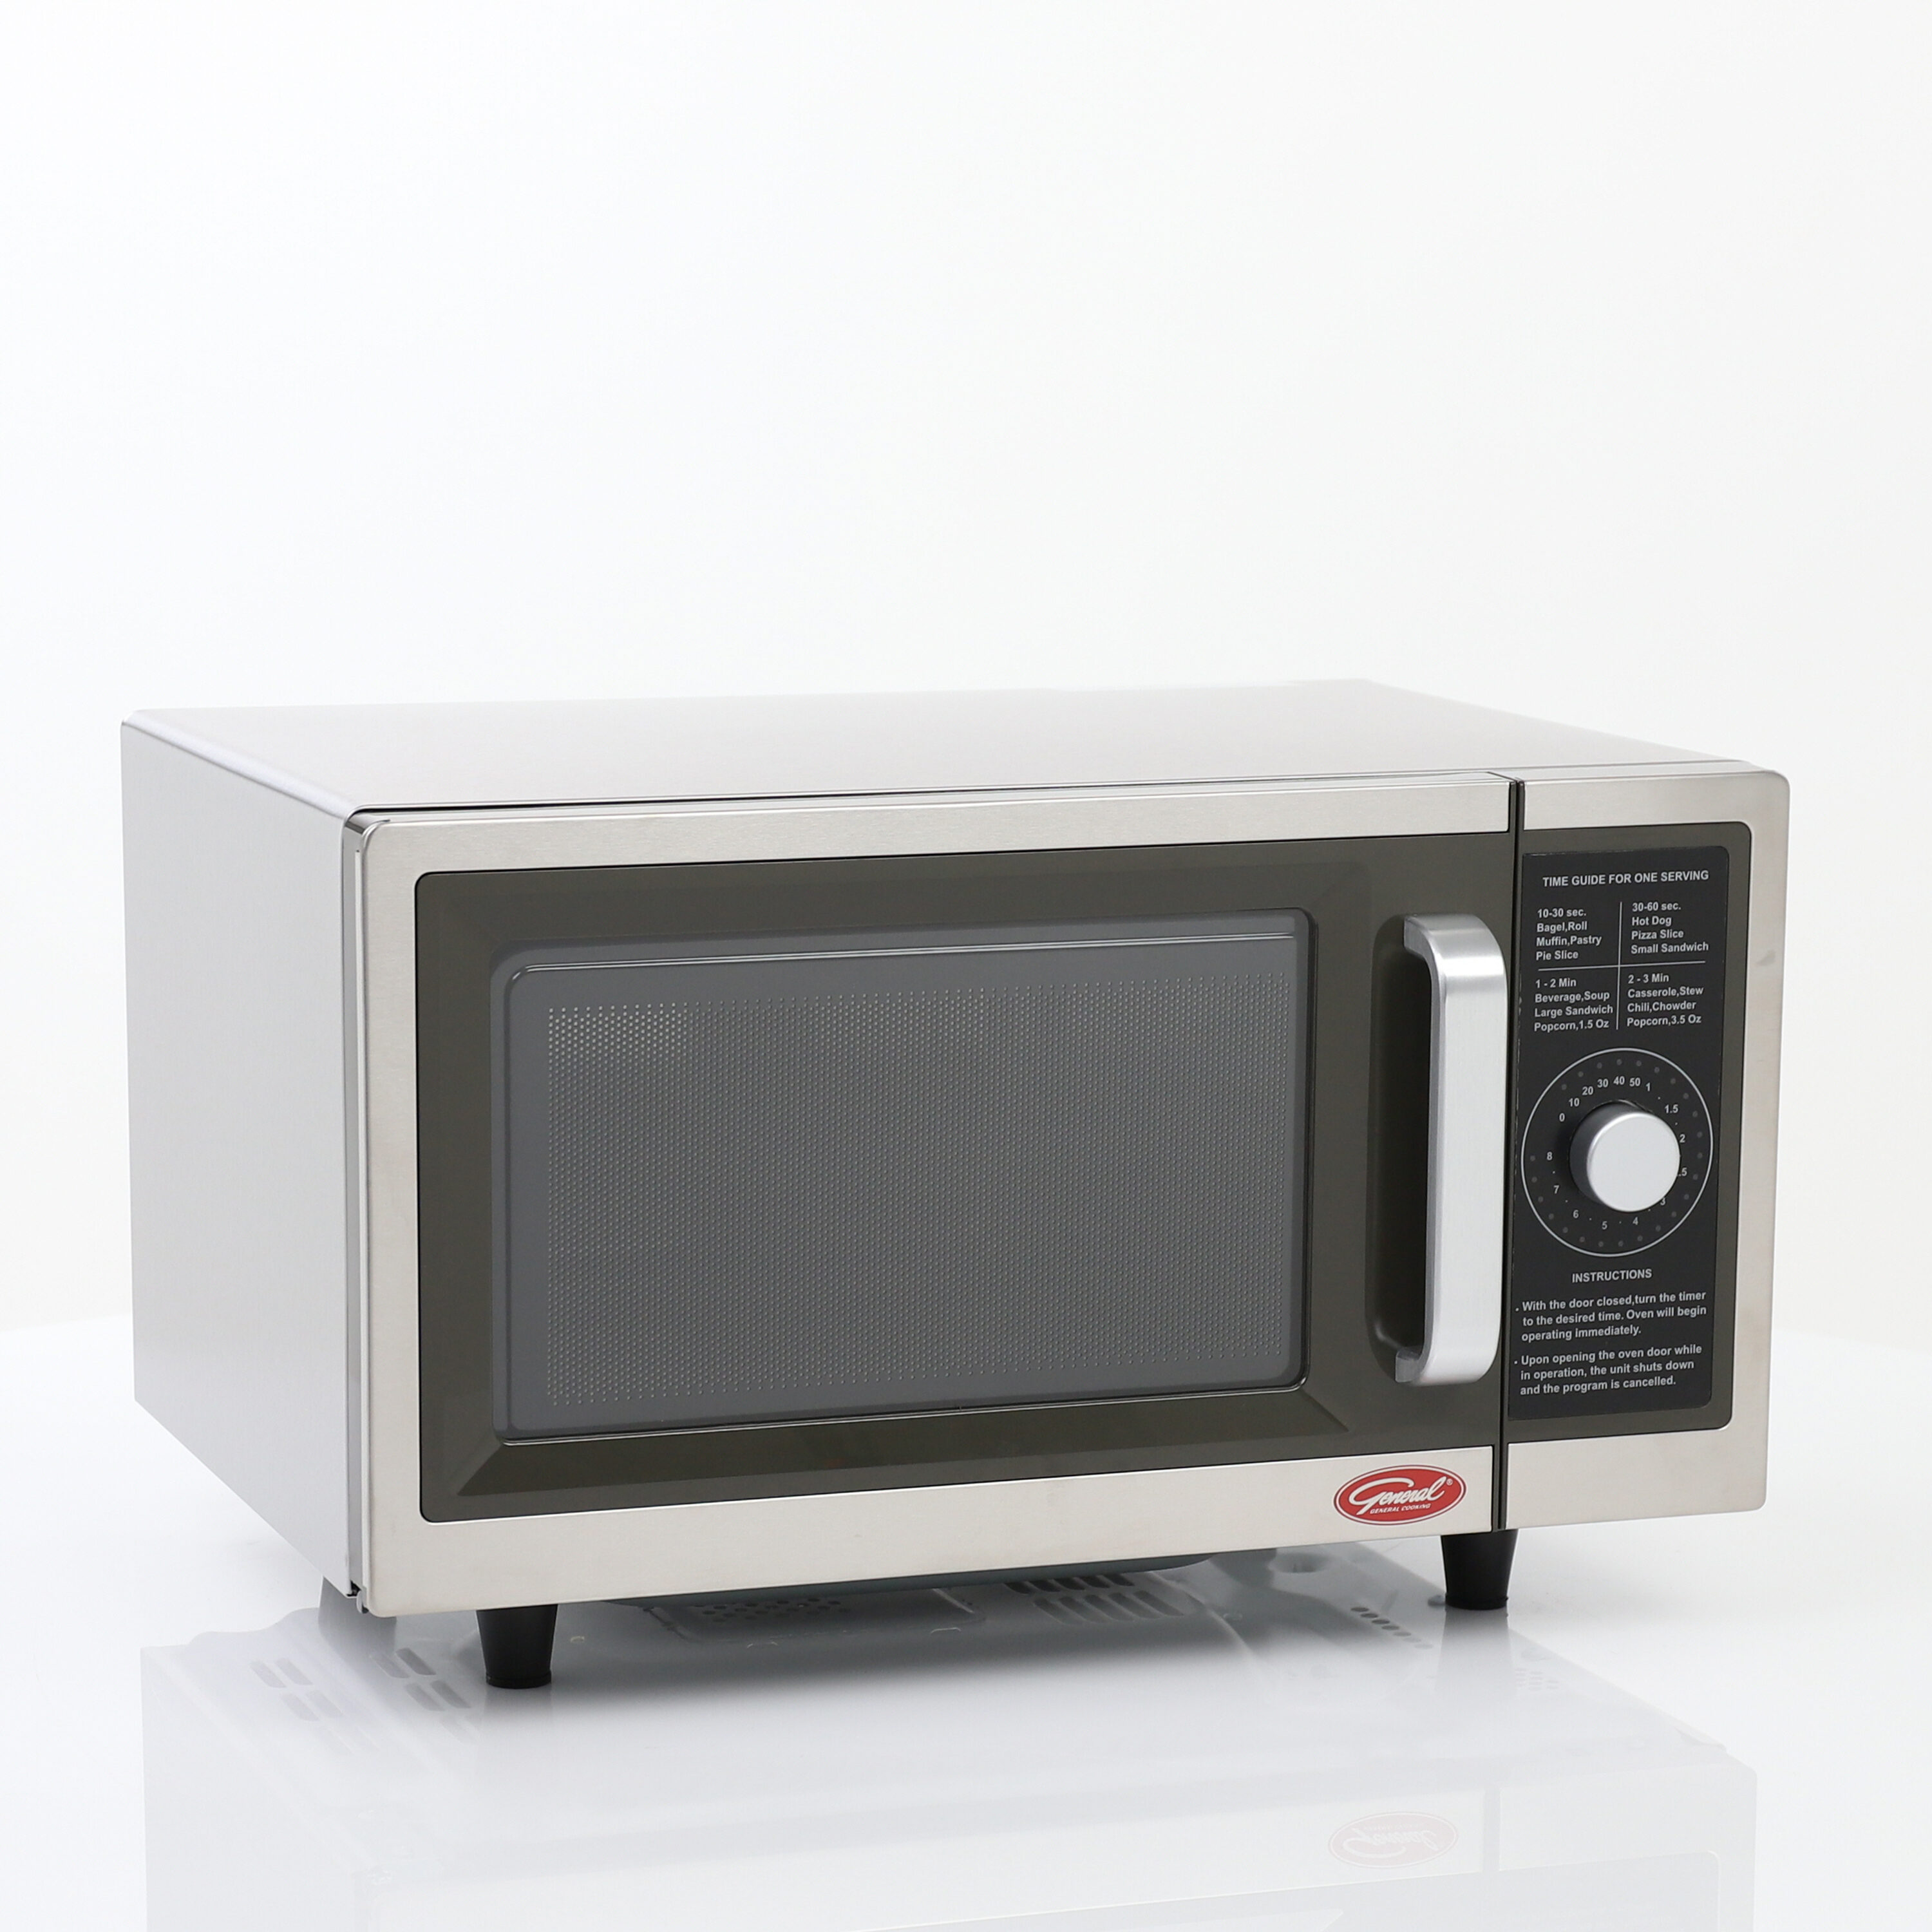 GE 1.0 cu. ft. Countertop Microwave - Stainless Steel